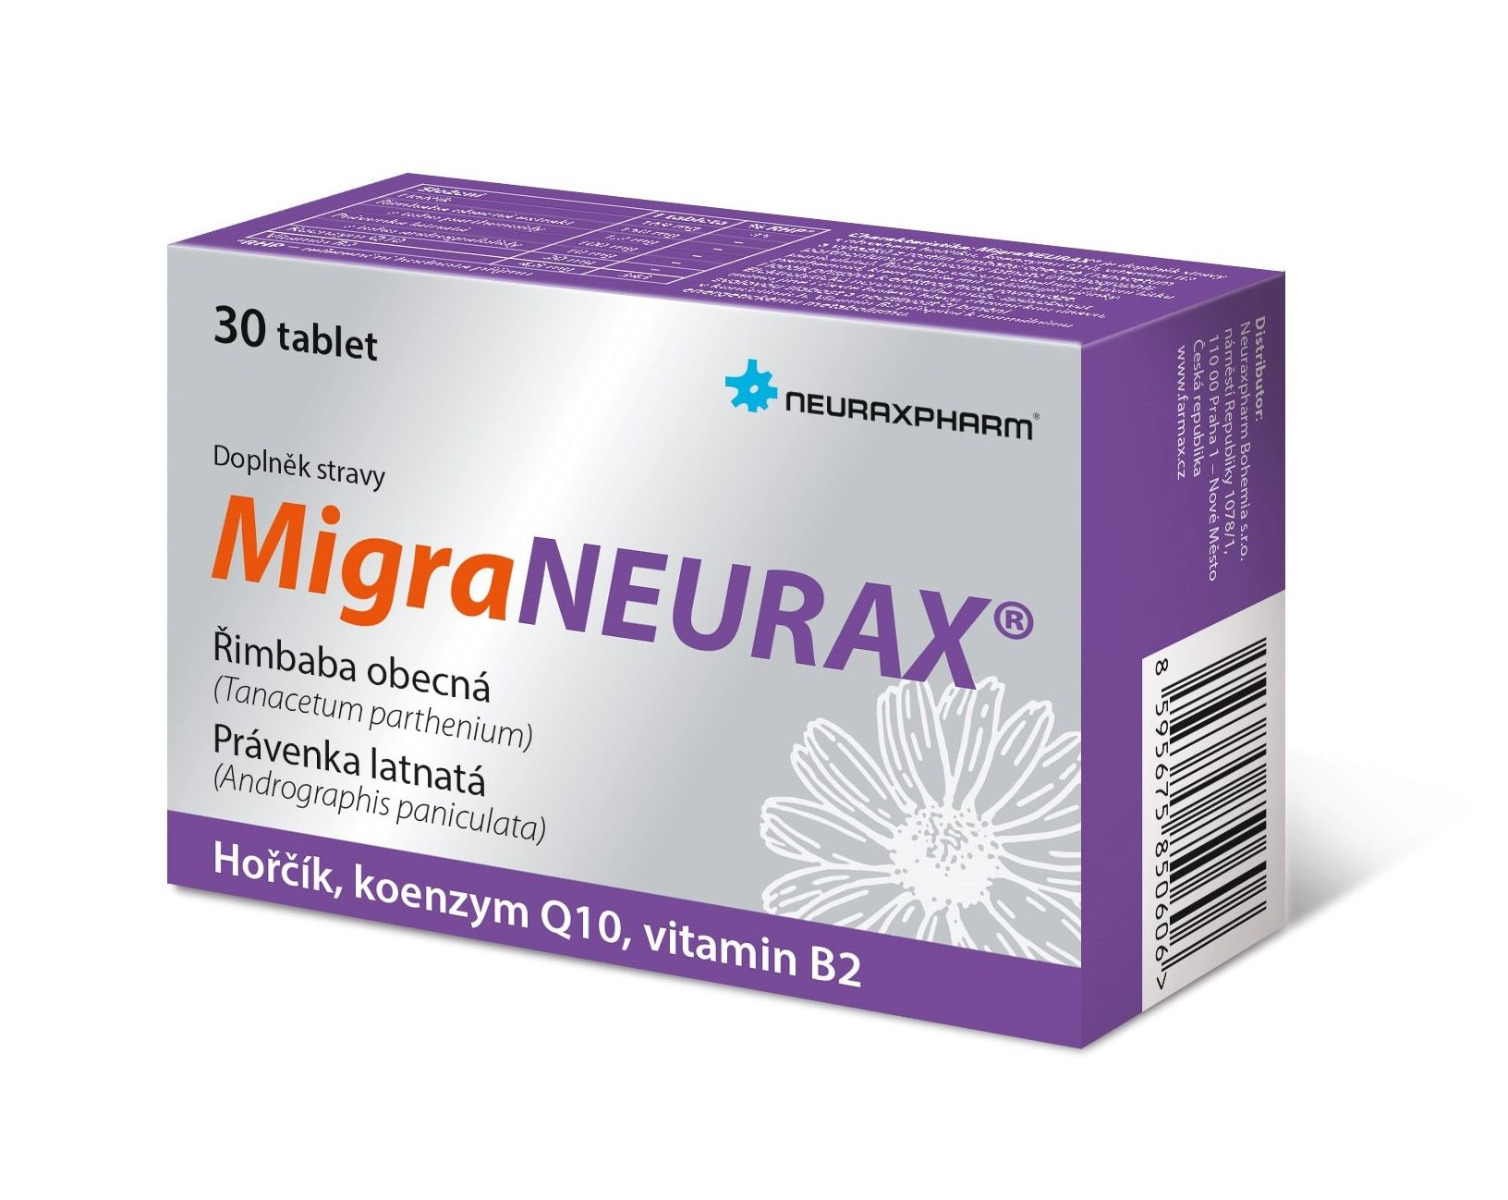 Neuraxpharm MigraNeurax 30 tablet Neuraxpharm